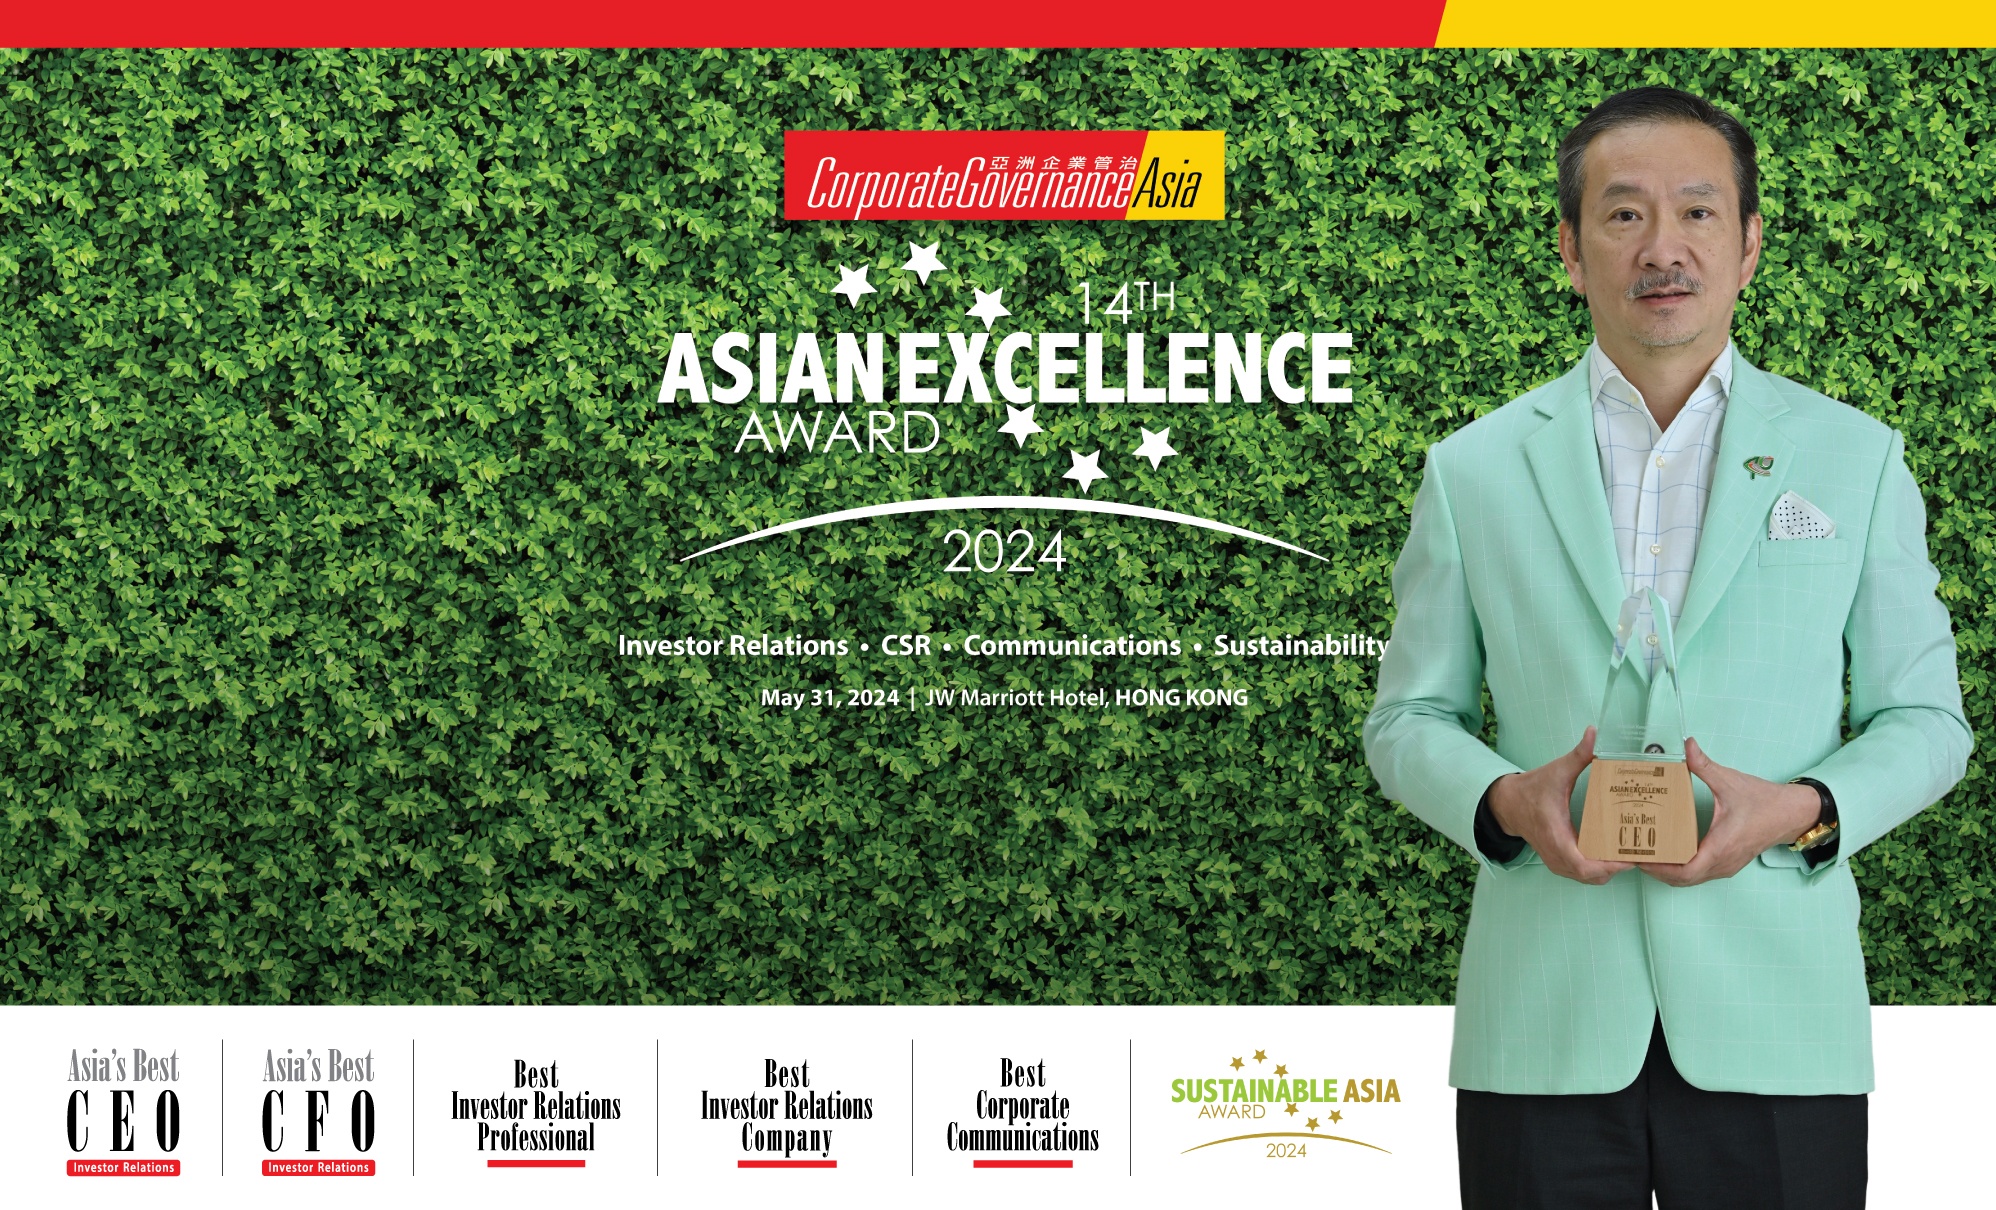 บางจากฯ คว้า 6 รางวัลความเป็นเลิศระดับเอเชีย จากเวที The 14th Asian Excellence Award ที่ฮ่องกง